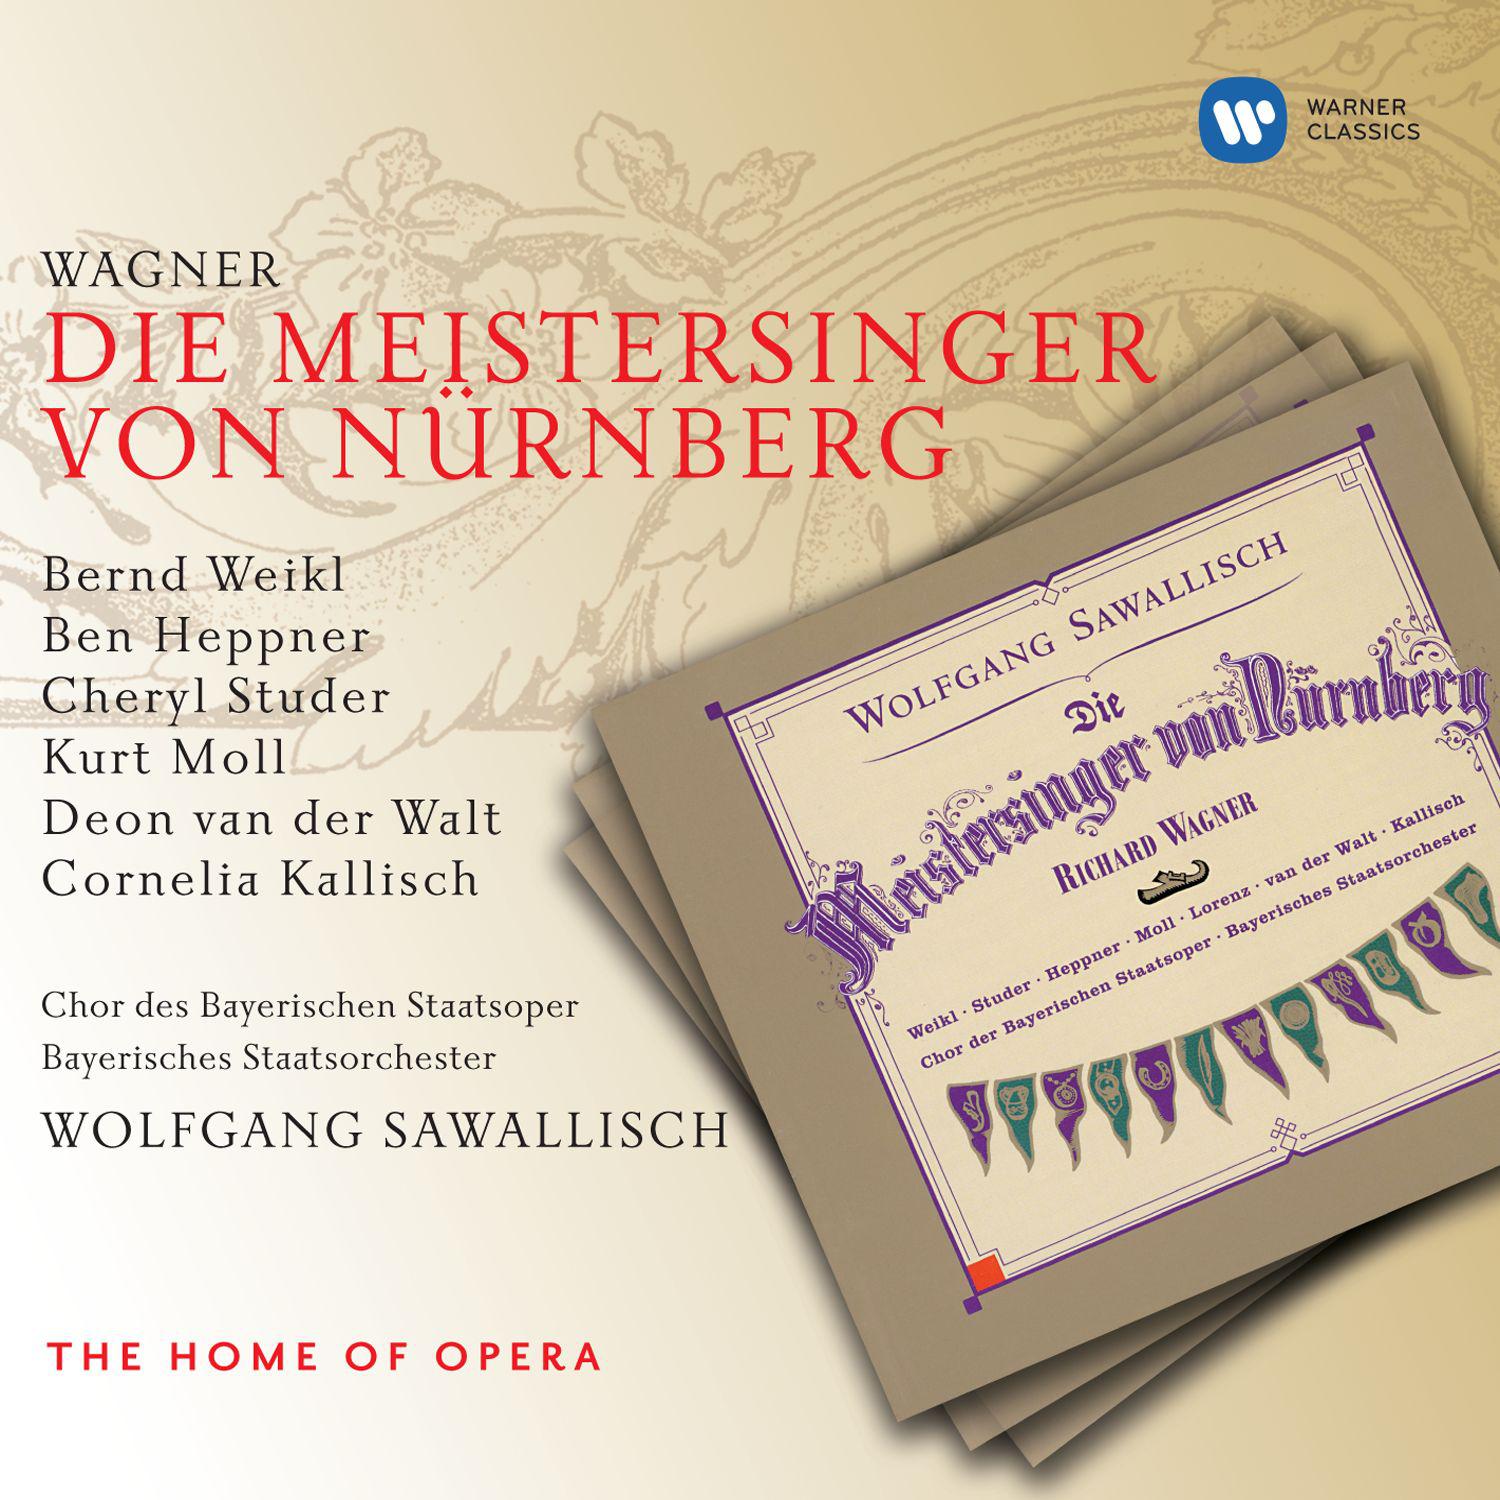 Die Meistersinger von Nürnberg, Act 3, Scene 3:Ein Werbelied! Von Sachs! - ist's wahr?